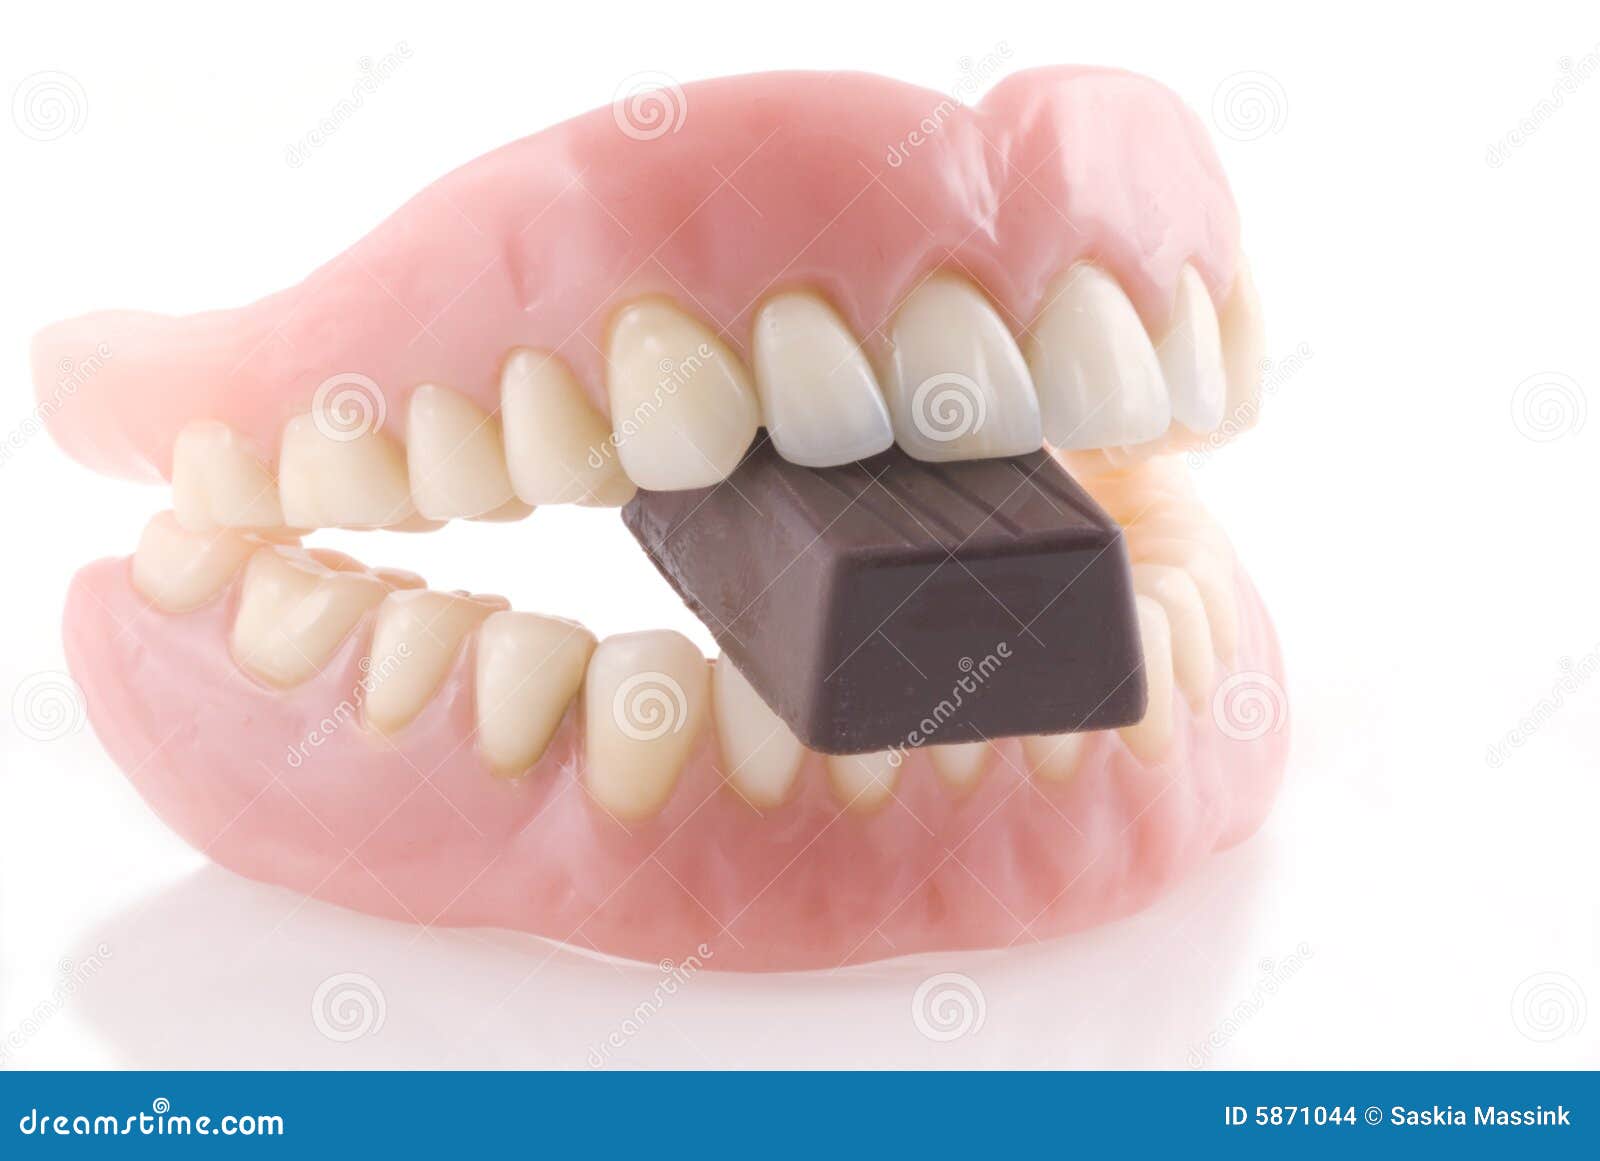 dentures and chocolat.